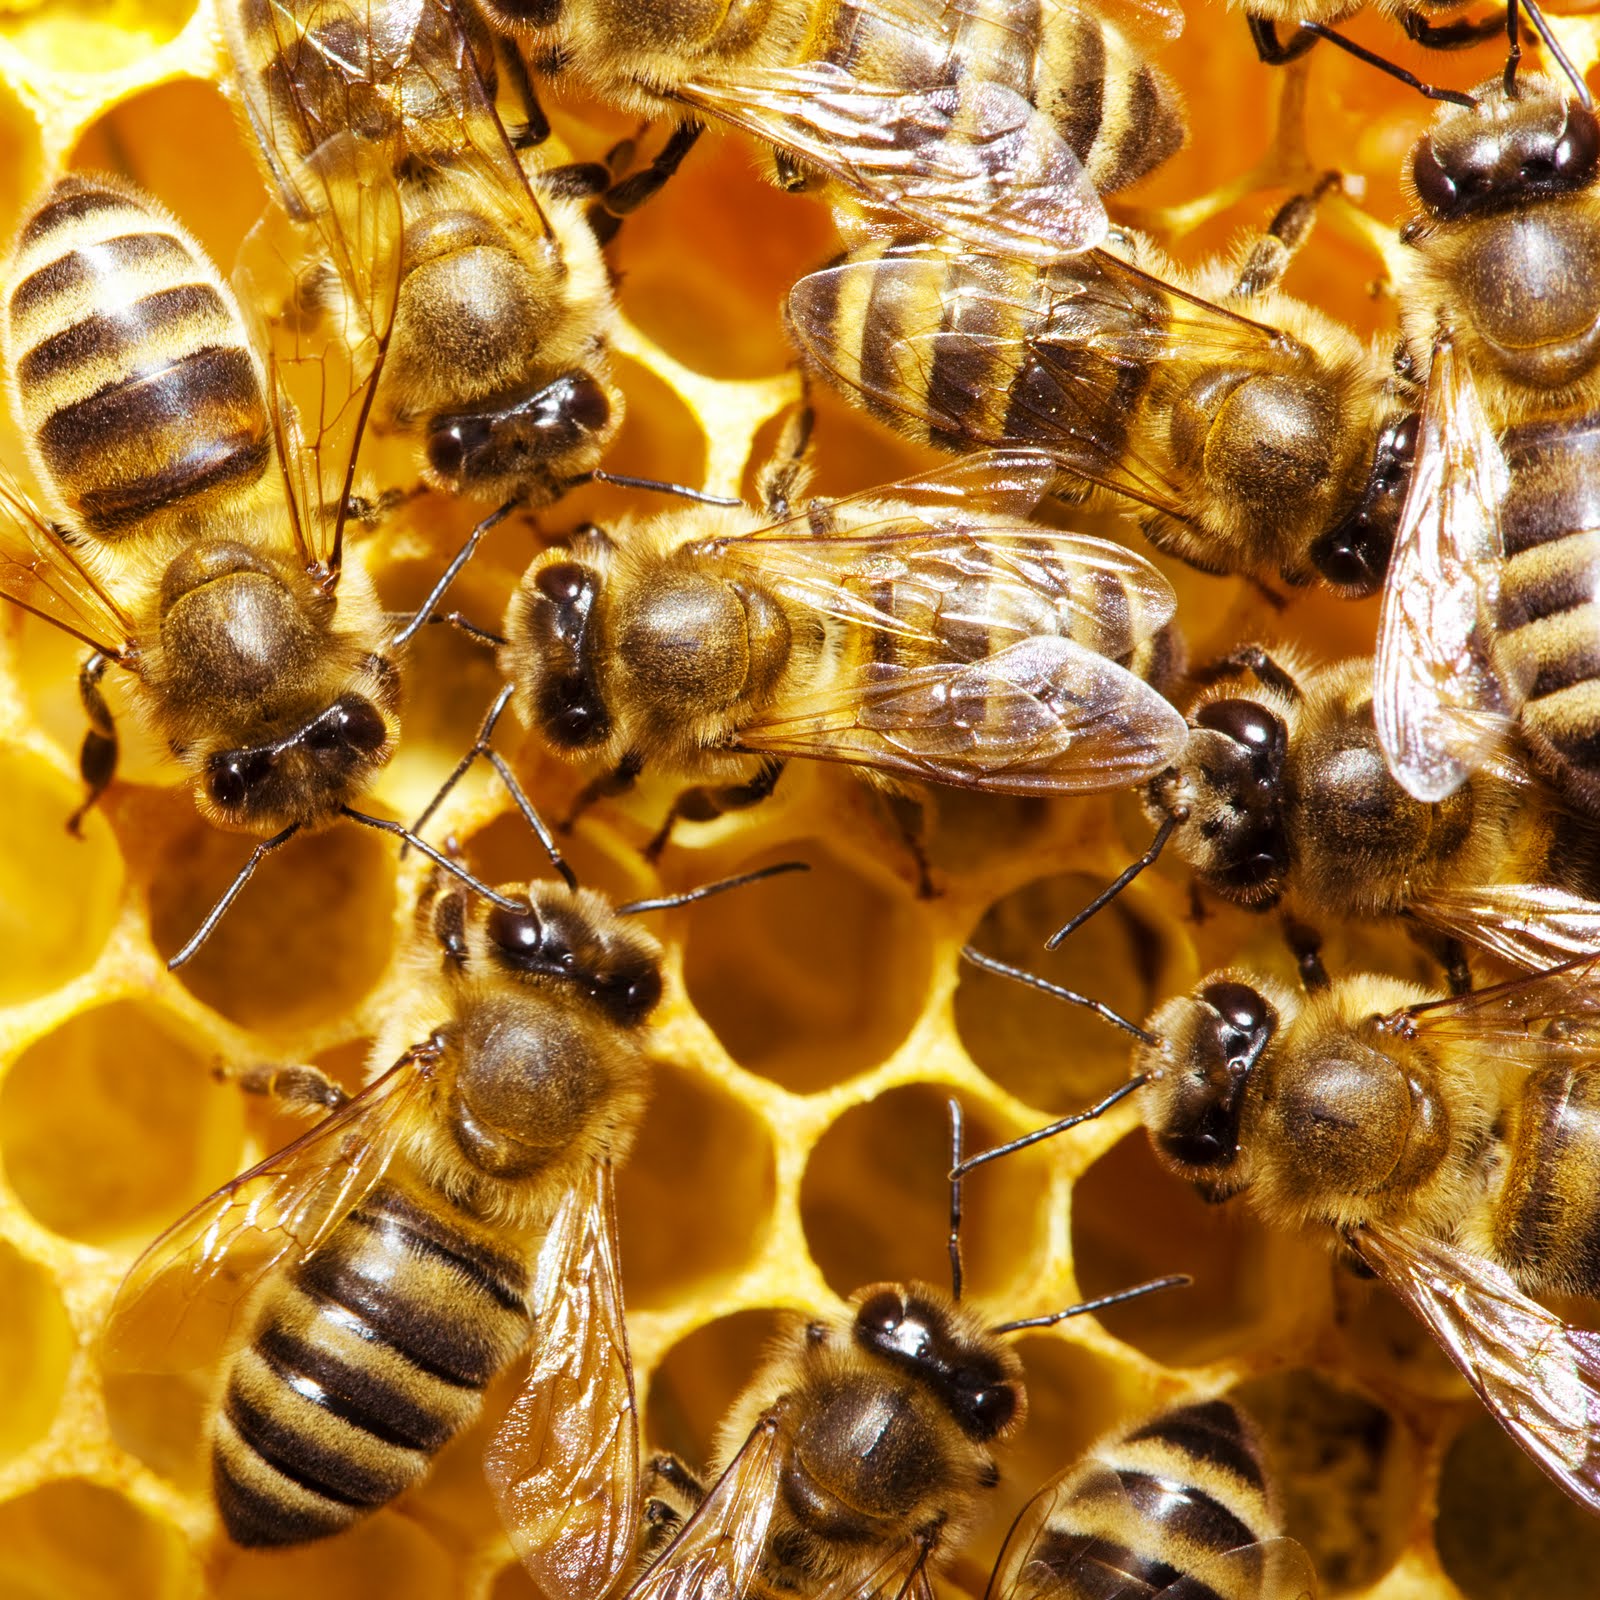 [bees1.jpg]